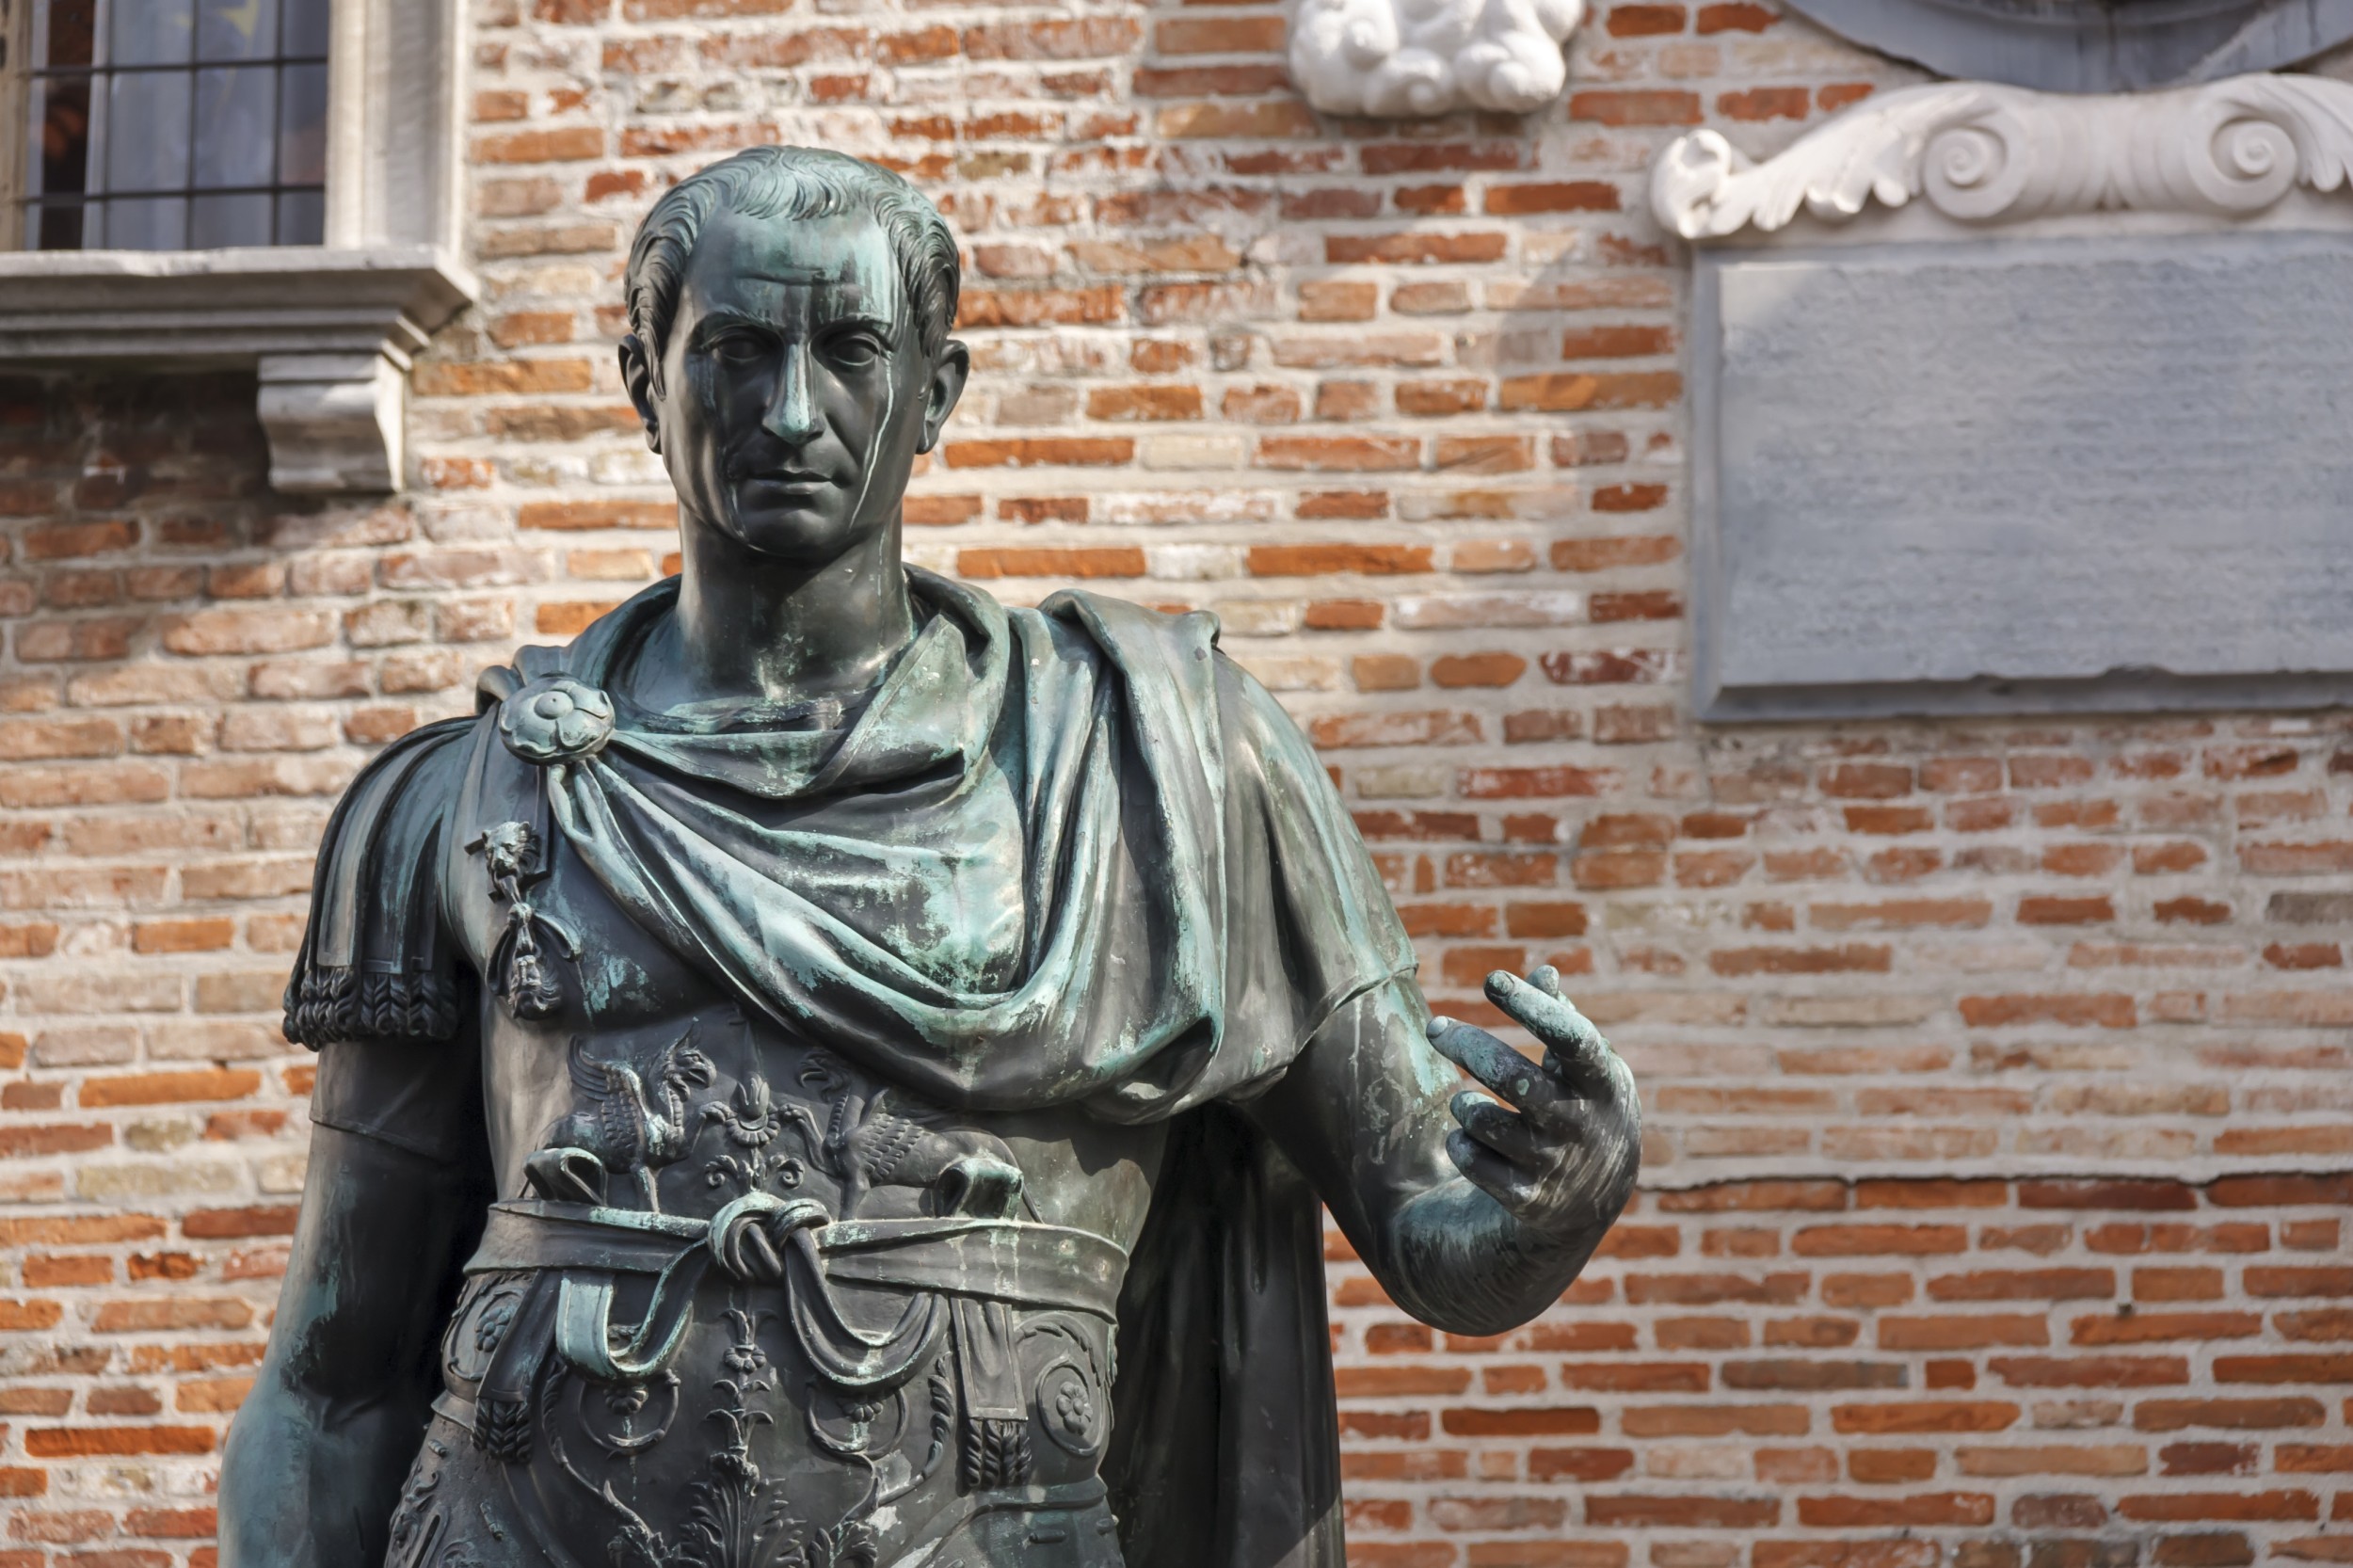 Império Romano: Júlio César e suas mulheres 